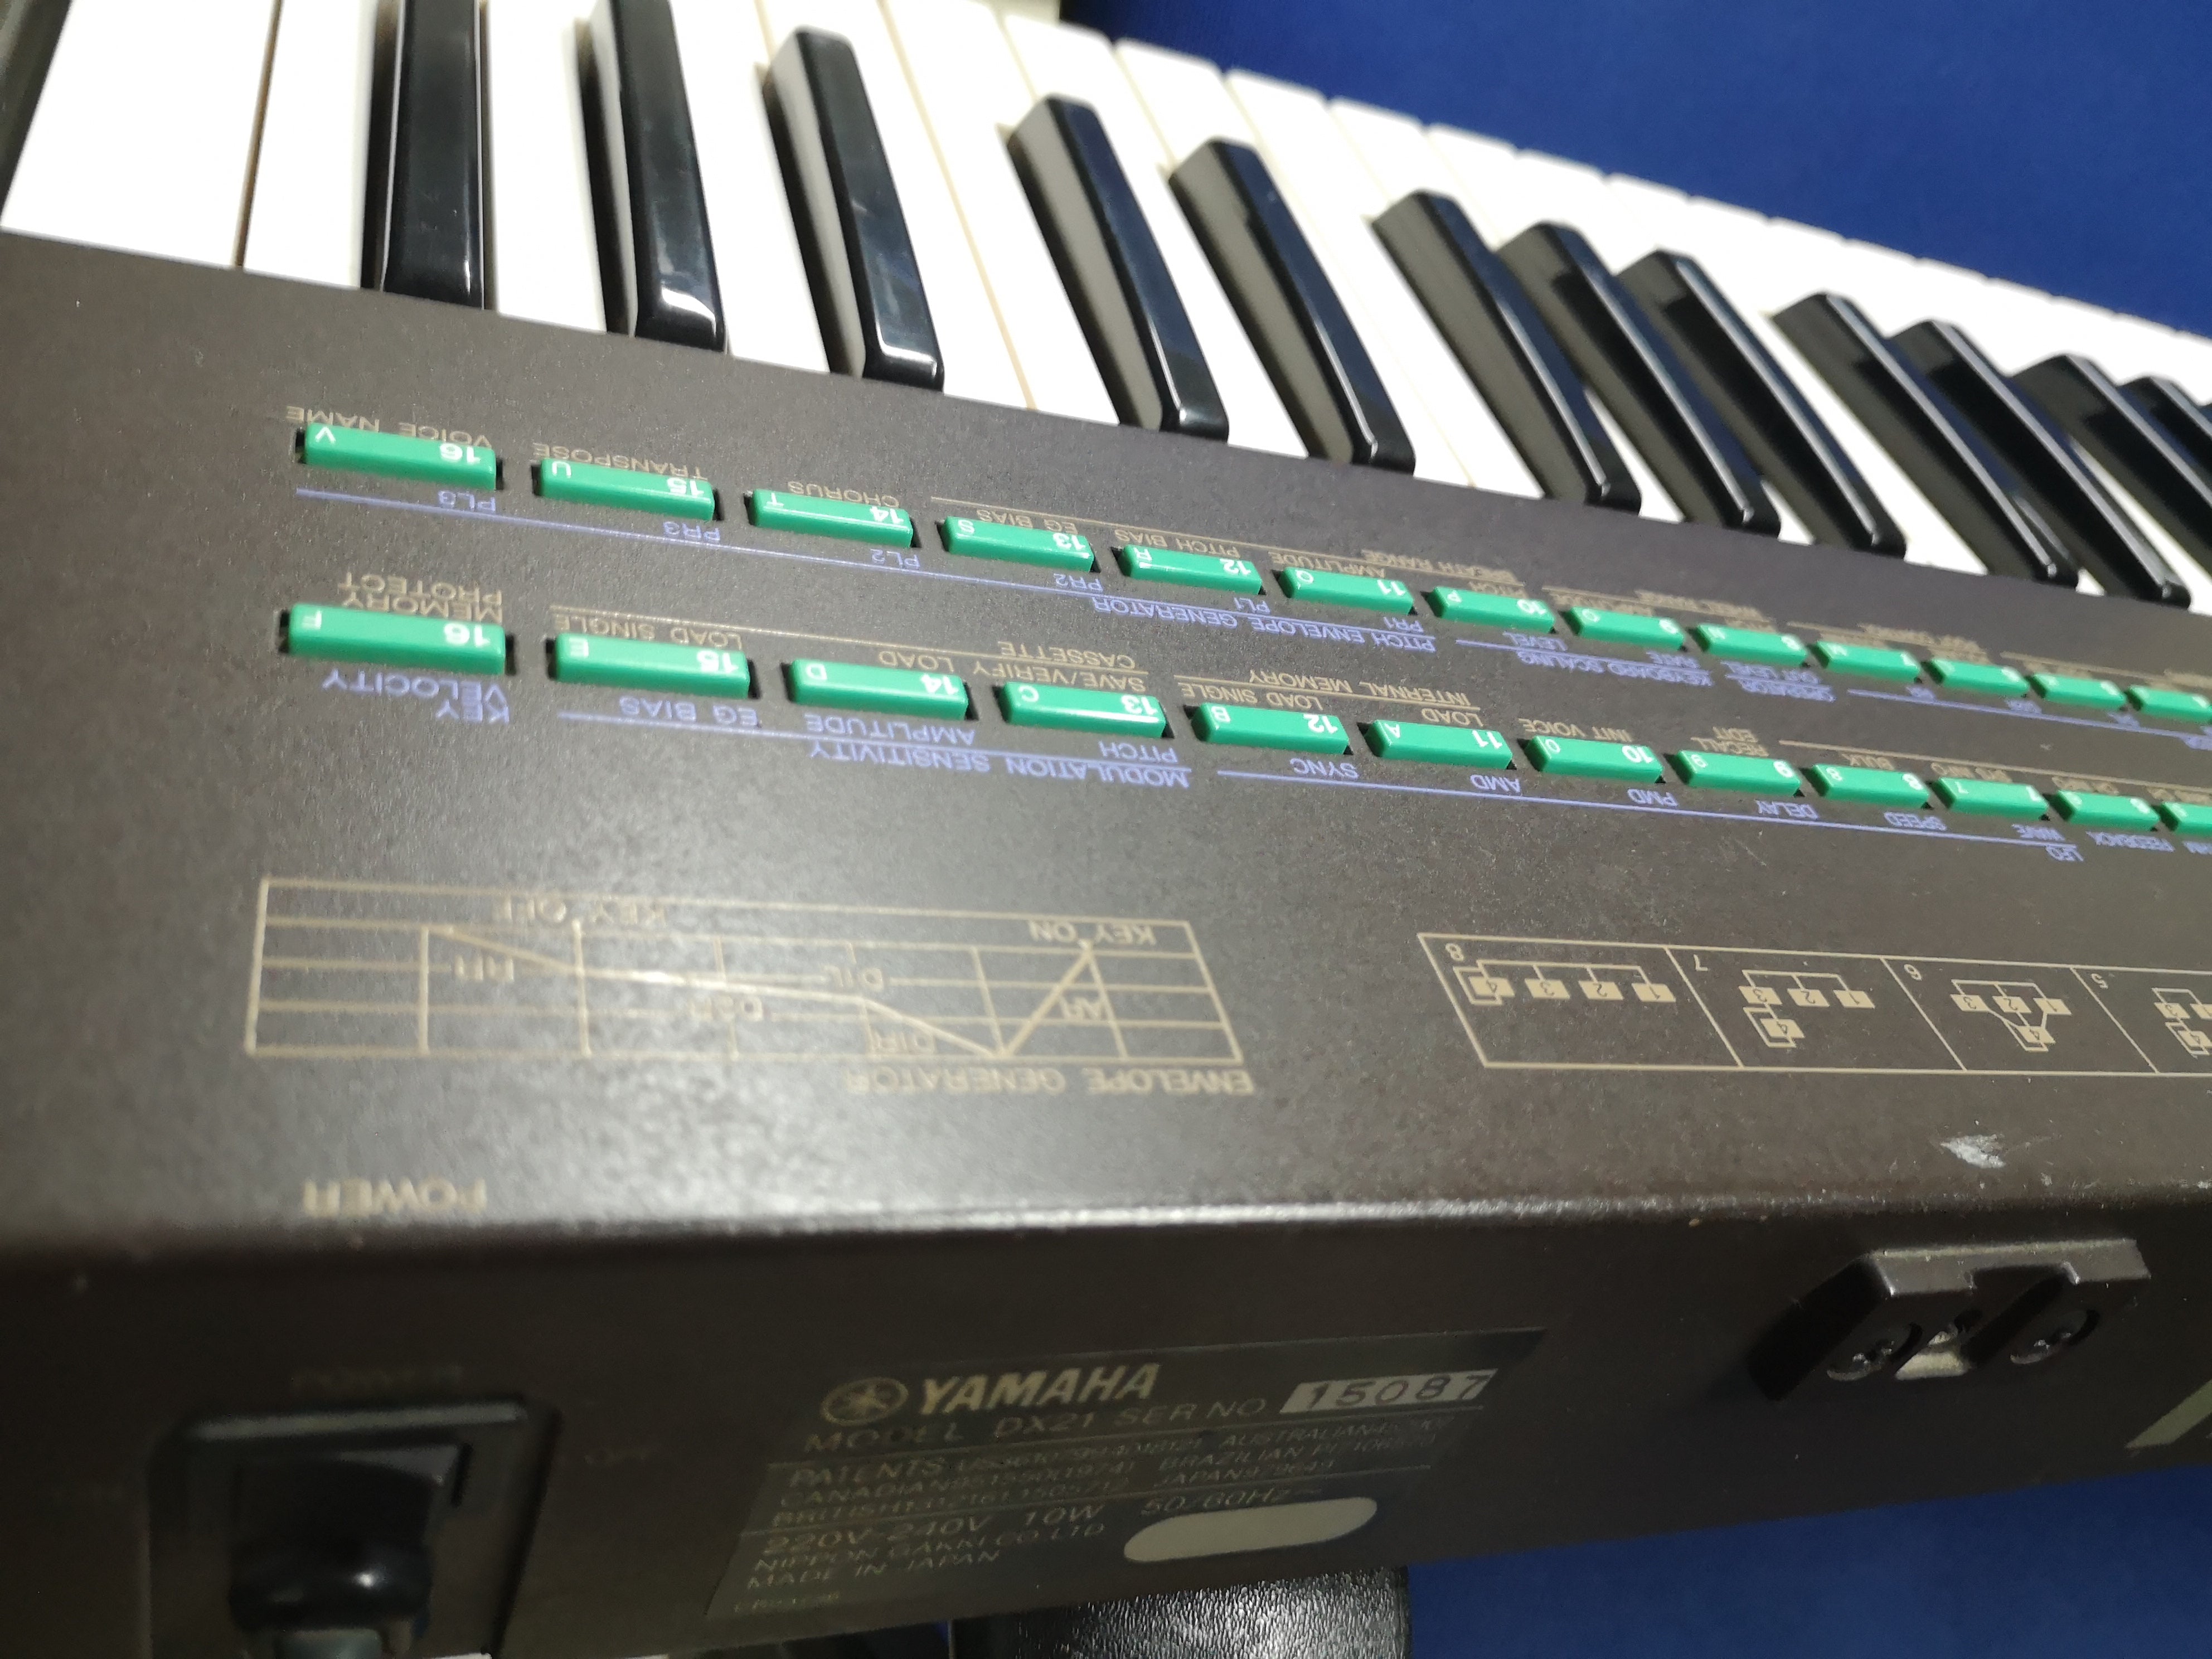 Yamaha DX21 - Digital FM vintage synthesizer